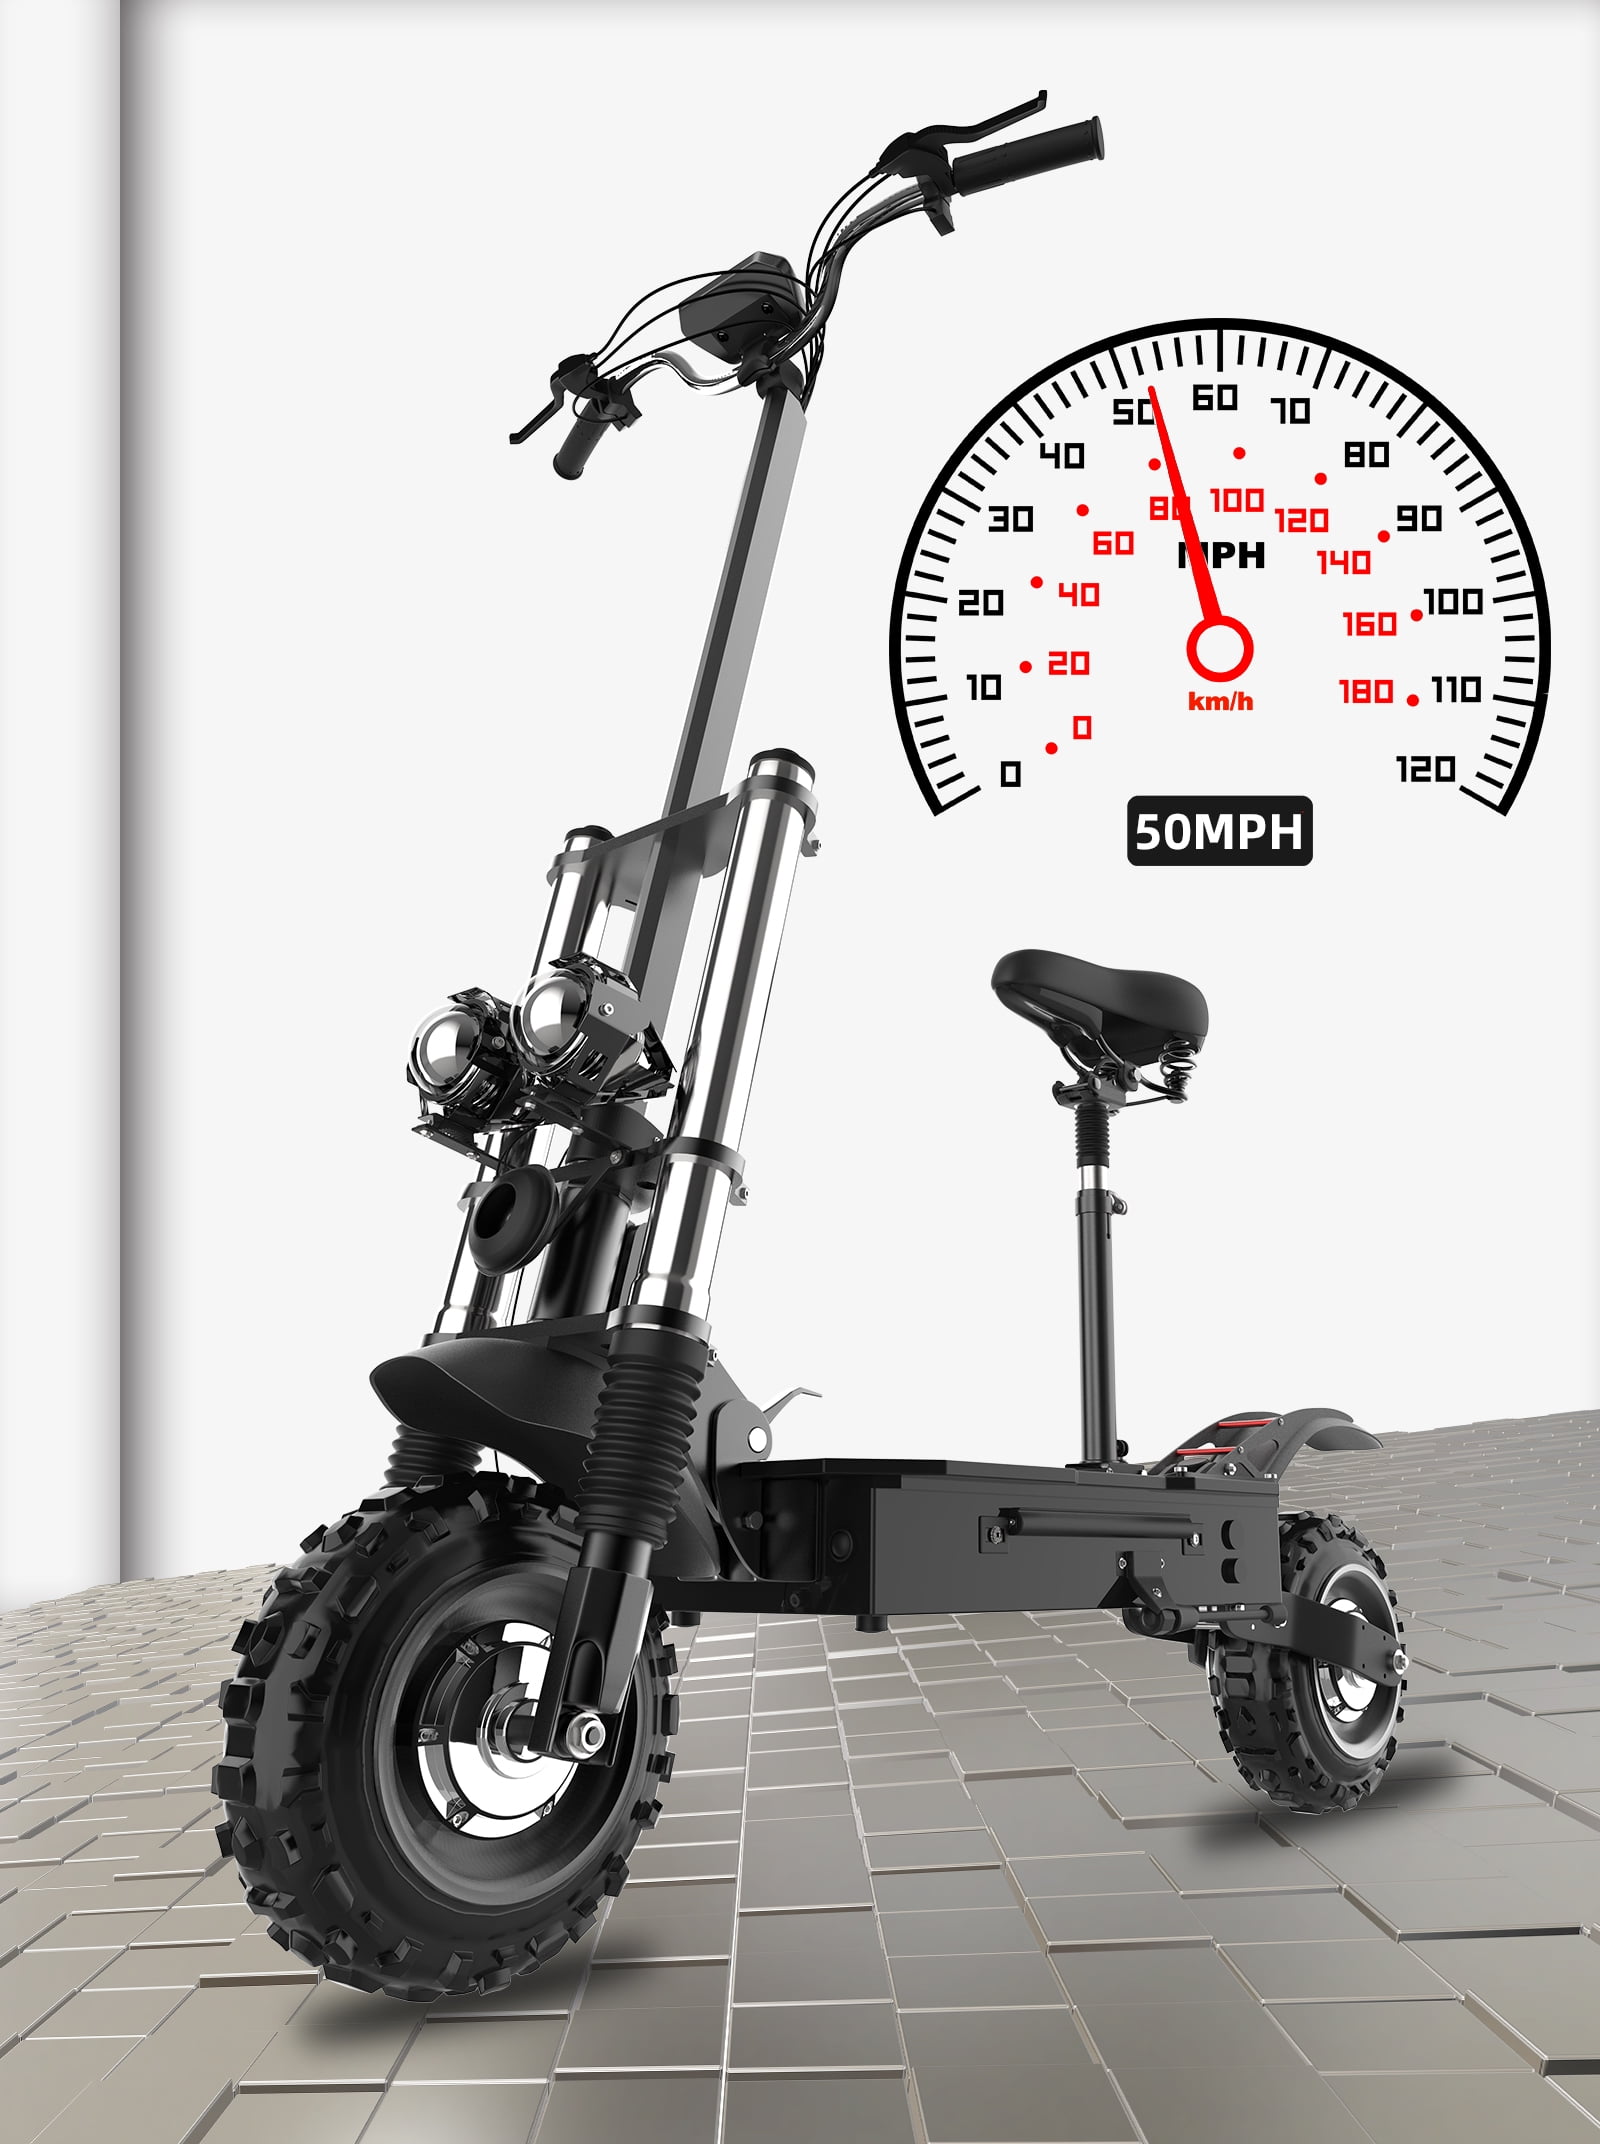  Scooter eléctrico para adultos, velocidad máxima de 50 mph,  5600 W, 35 Ah, motor dual con asiento, neumático grueso de 11 pulgadas,  scooter eléctrico plegable todo terreno hasta 56 millas de